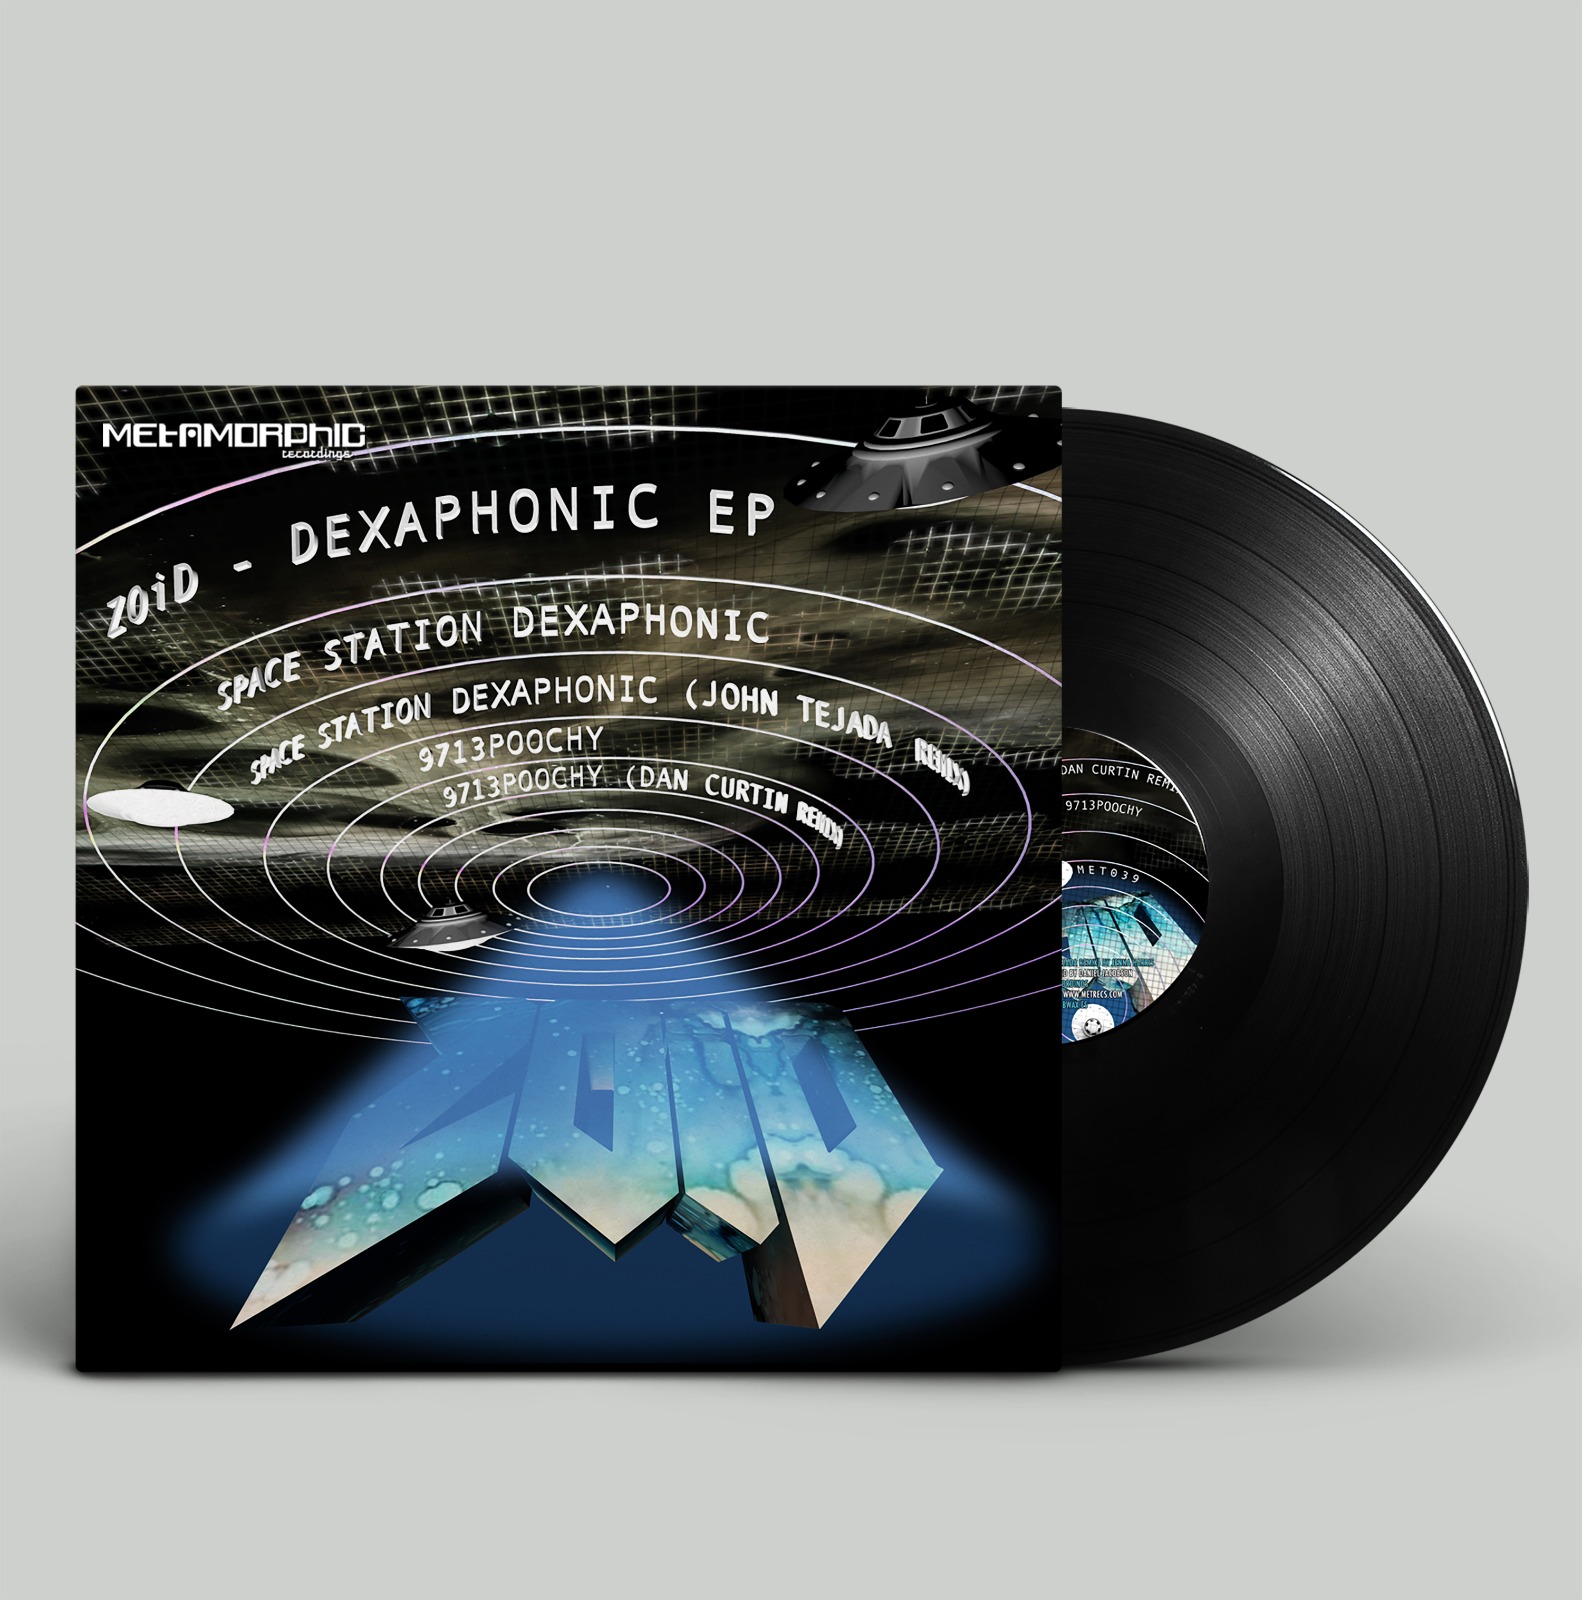 Dexaphonic EP (Metamorphic)